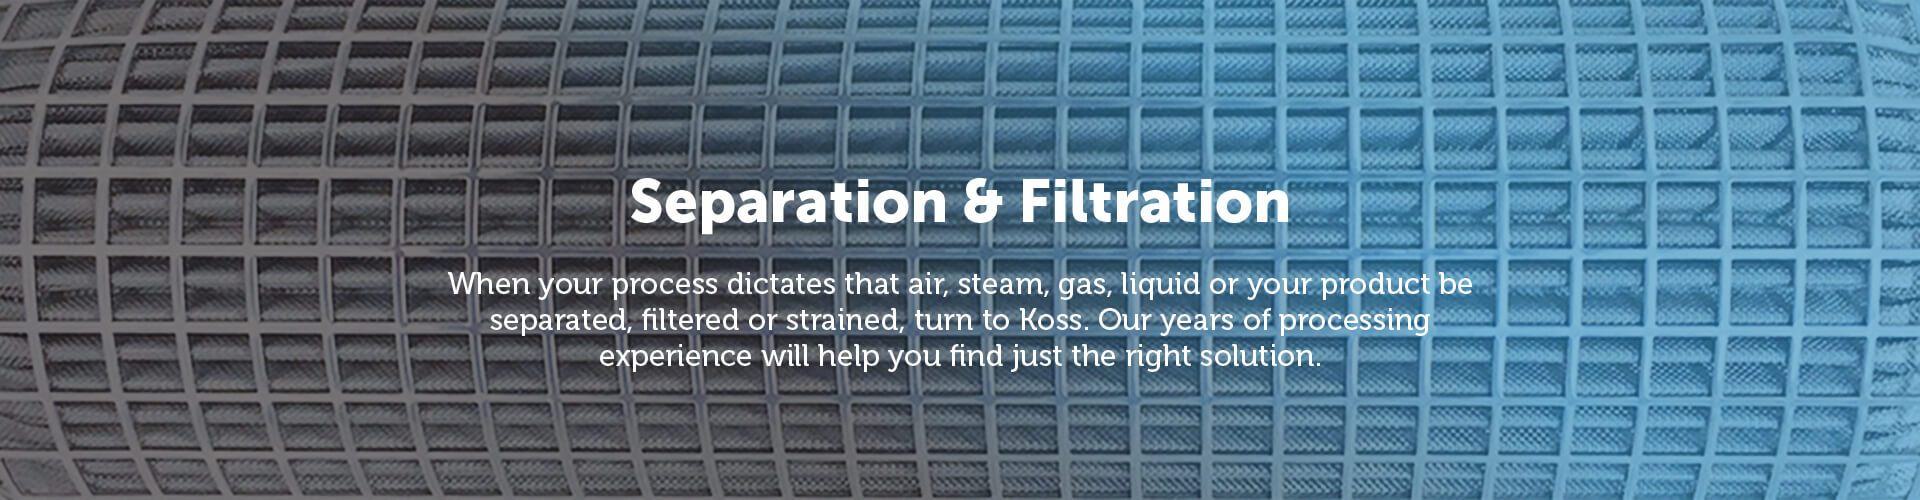 Koss Separation & Filtration